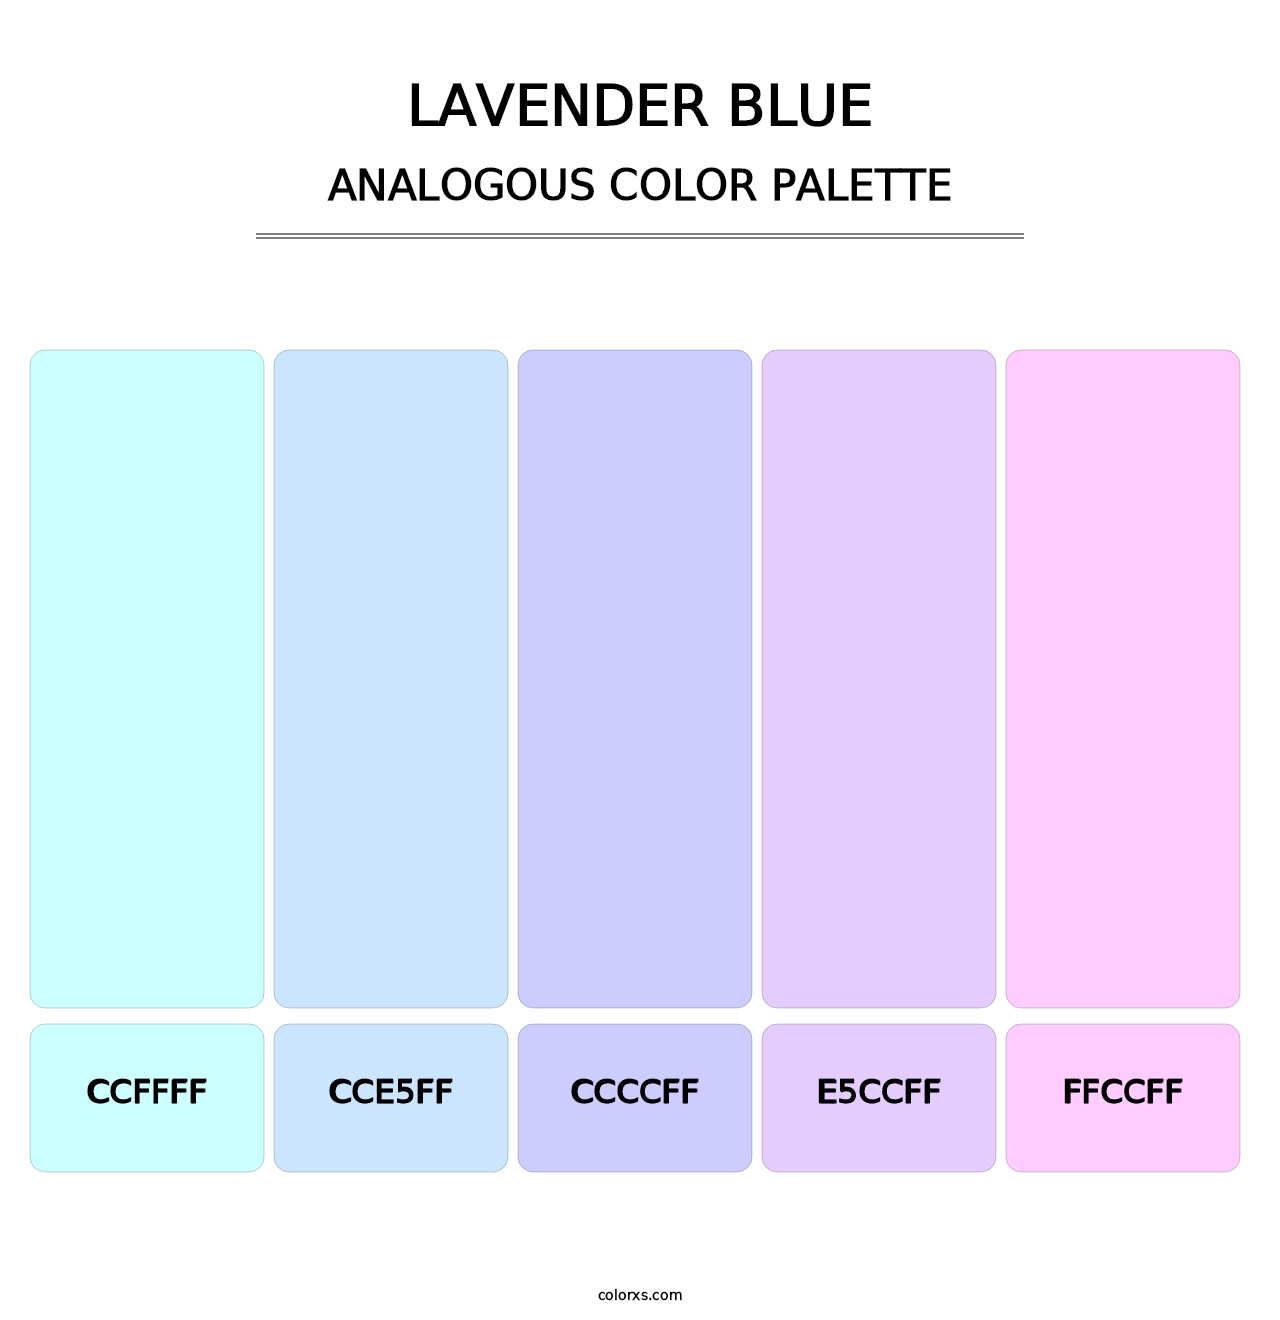 Lavender Blue - Analogous Color Palette